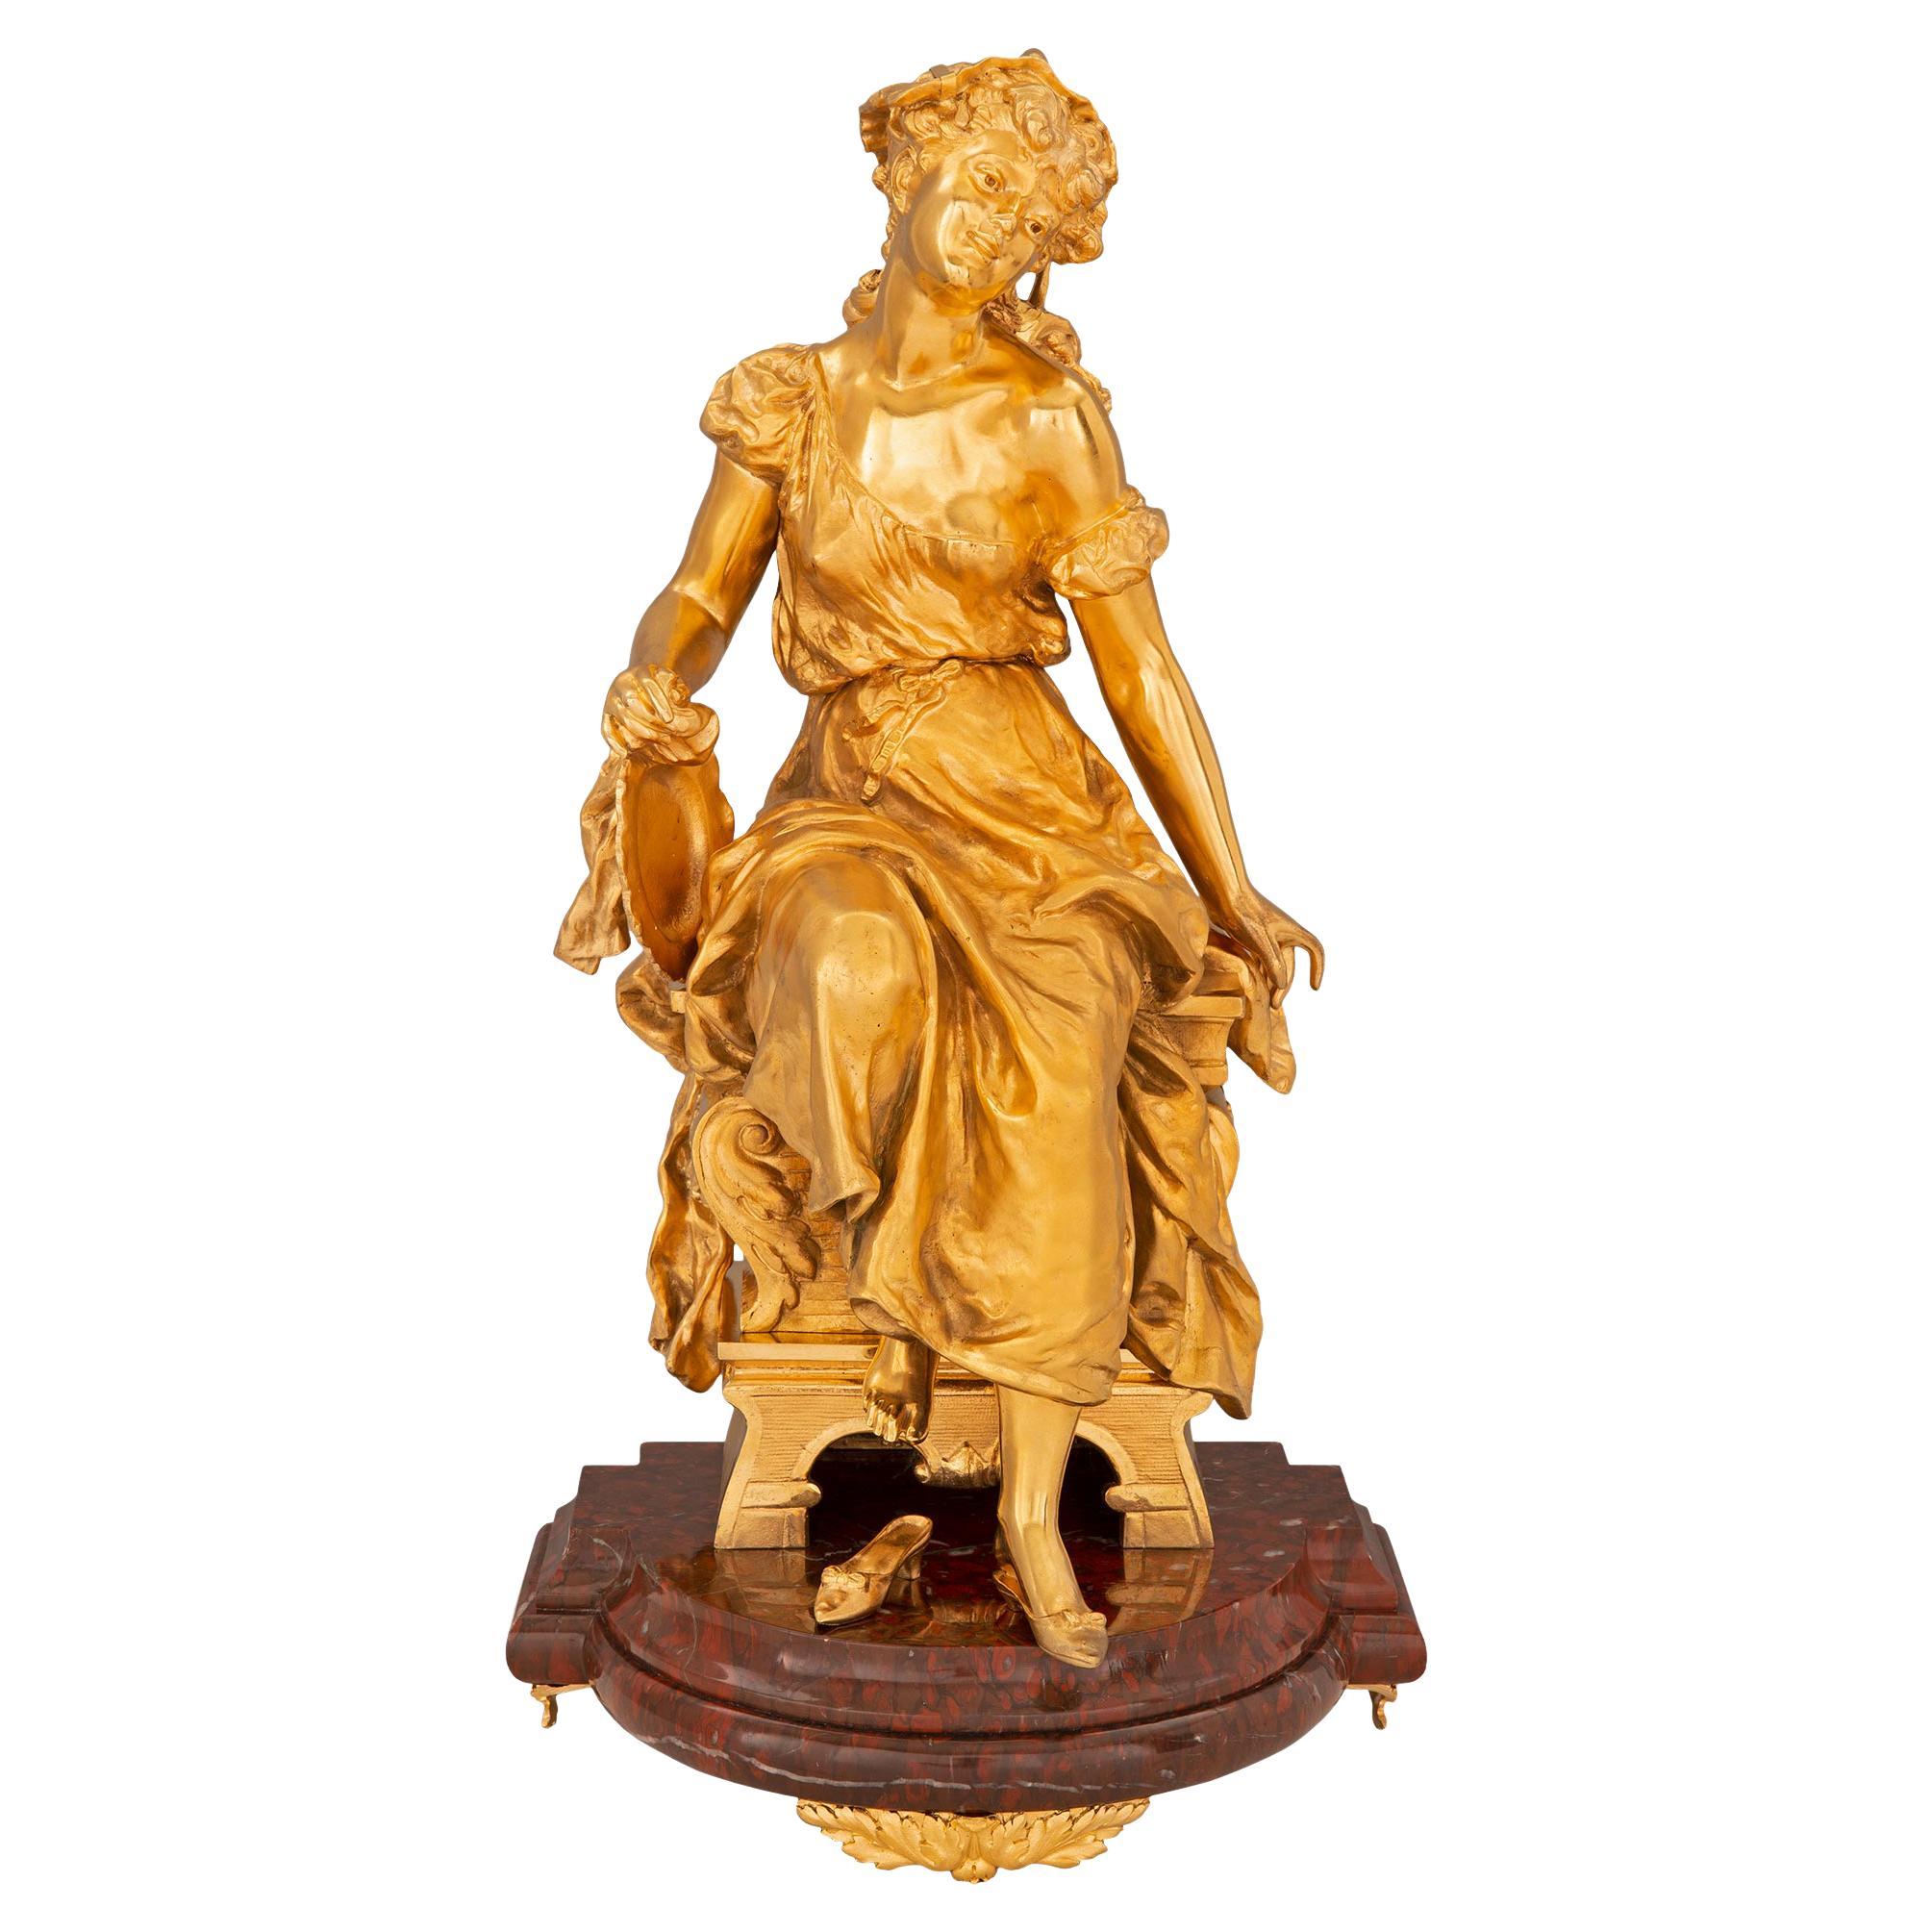 Statue française du 19ème siècle de style Louis XVI en bronze doré et marbre rouge griotte